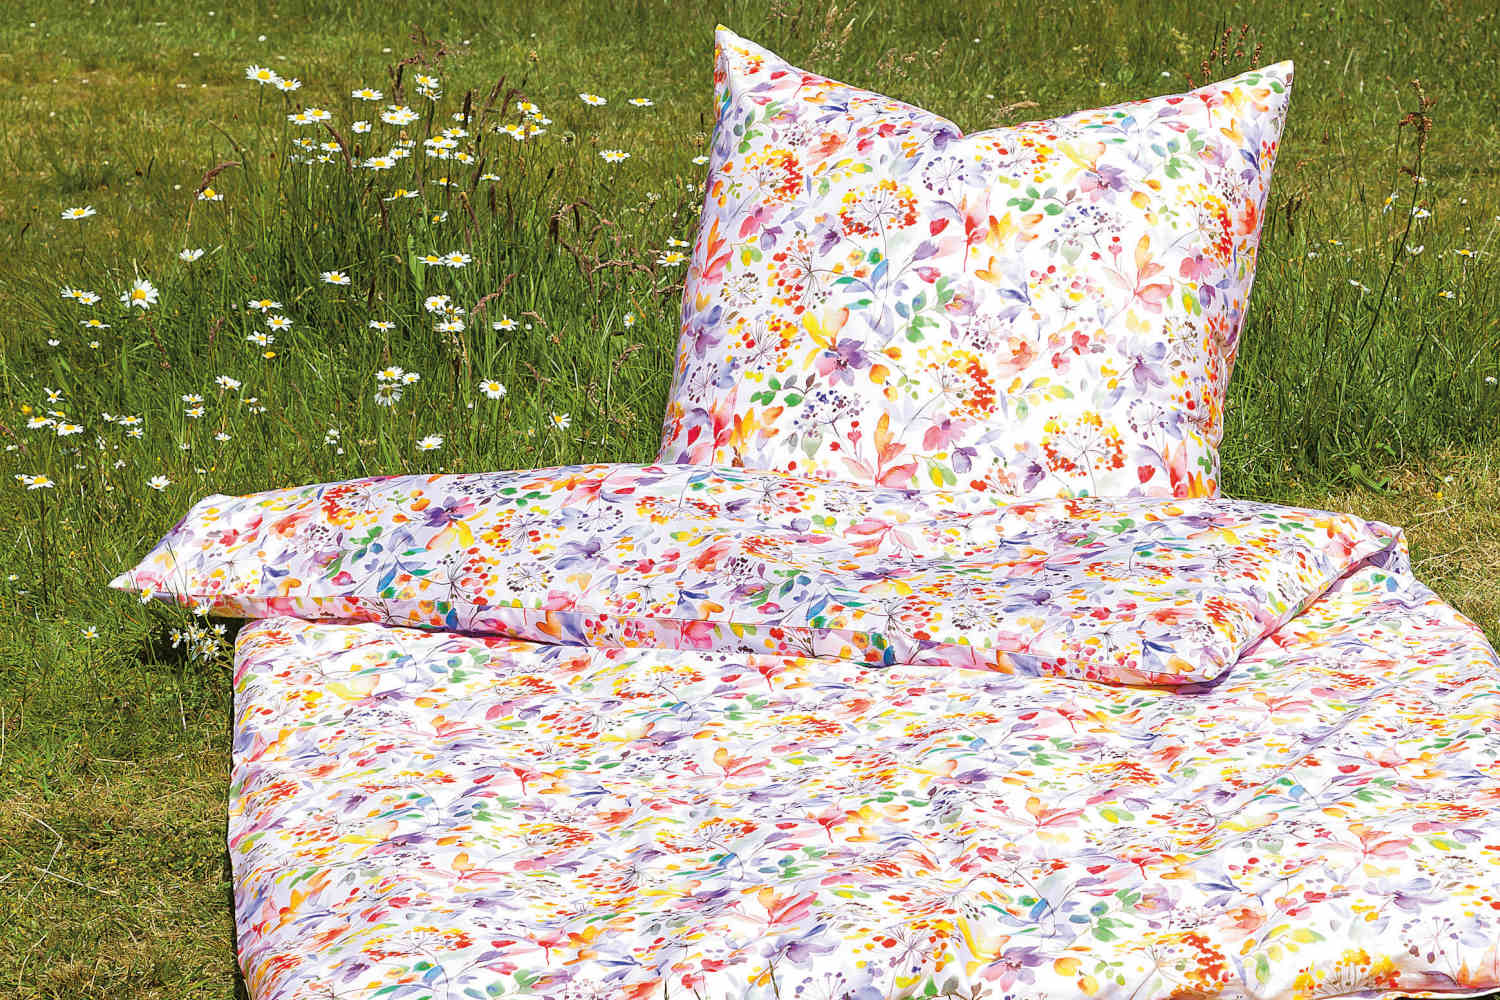 Janine Satin Bettwäsche modern art multicolor, aus 100% Baumwolle